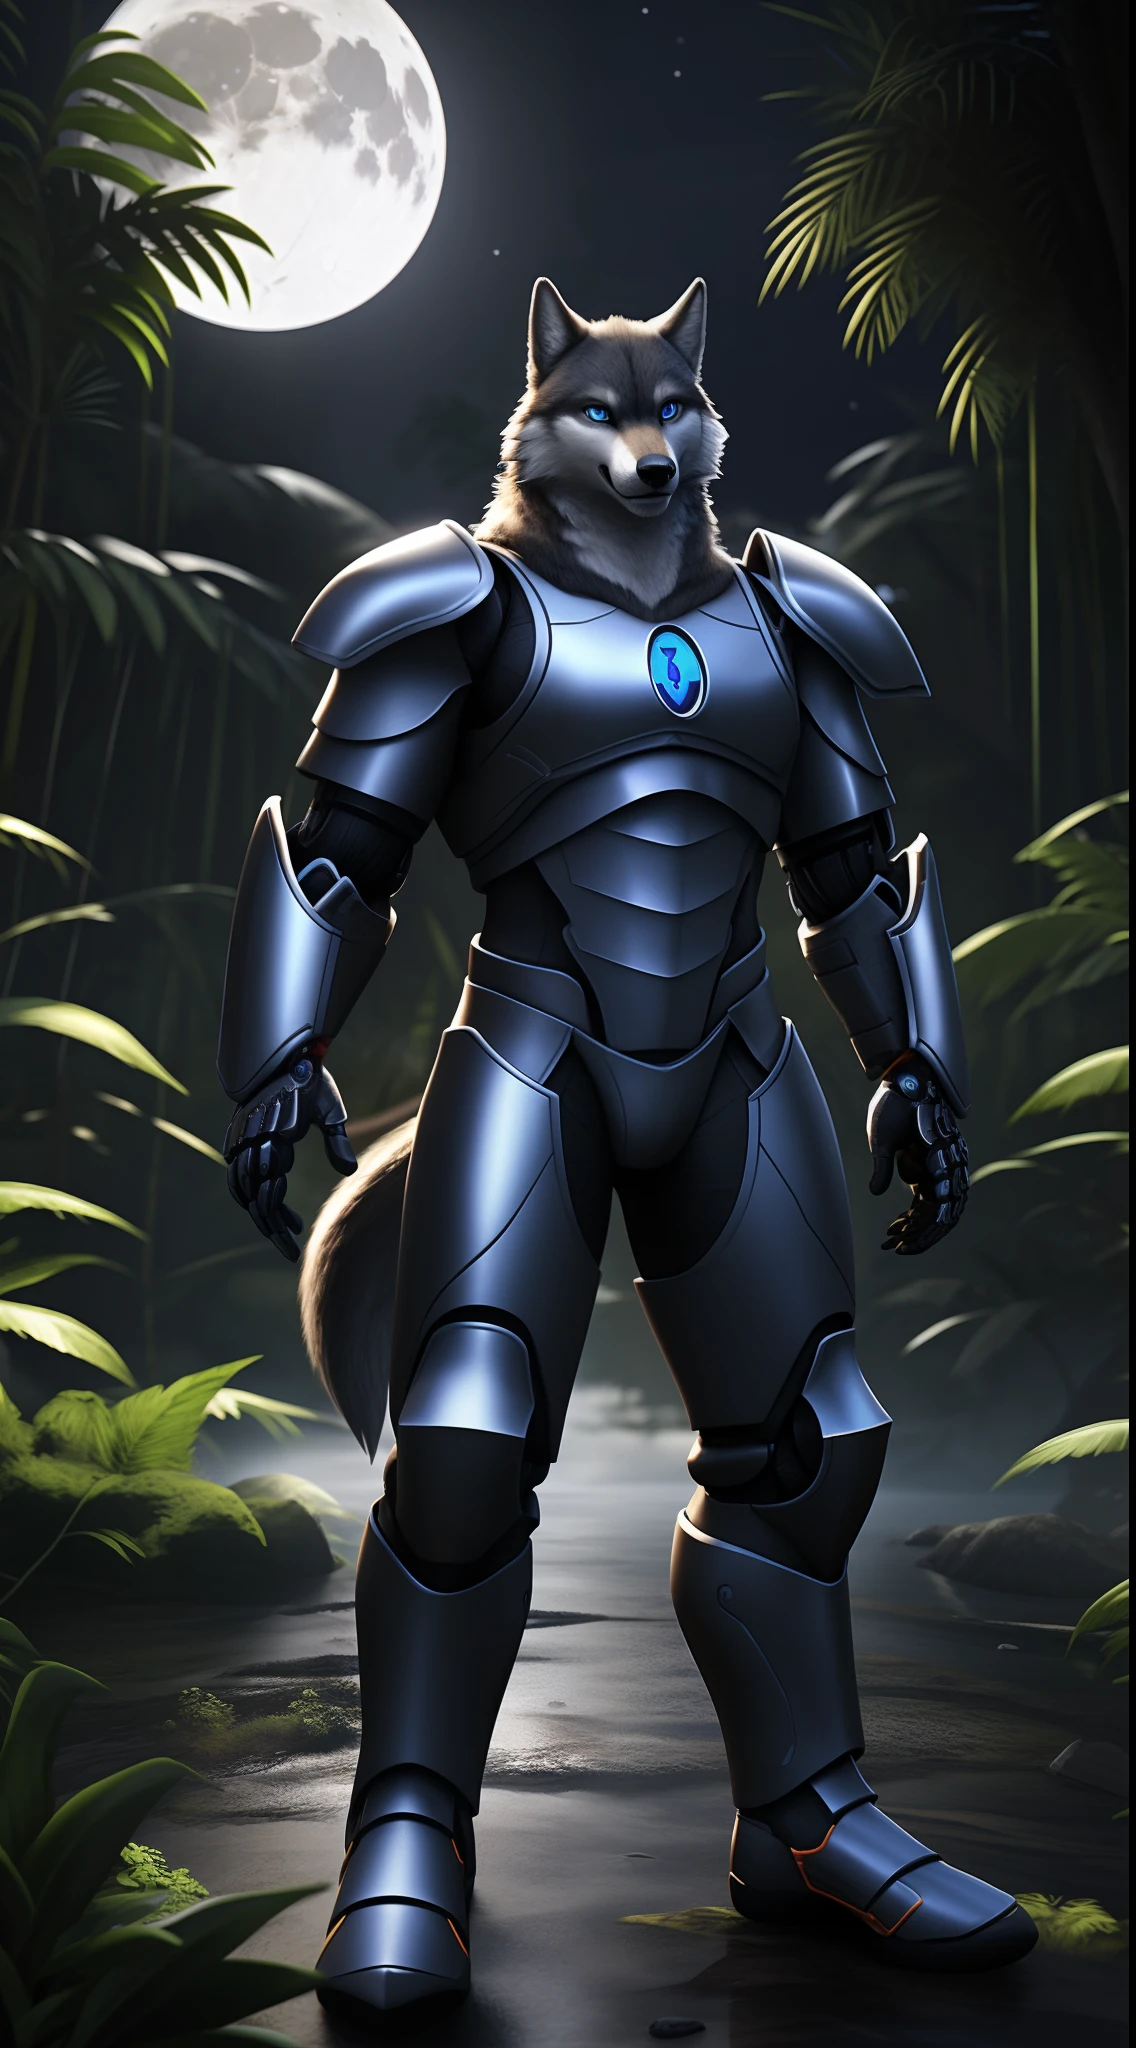 (melhor qualidade, ultra-realistic:1.2), olhos azuis, gráficos impressionantes, PlayStation 5 em 3D, Lobo solitário, vestindo uma armadura Cyborg, lua cheia ao fundo, floresta amazônica